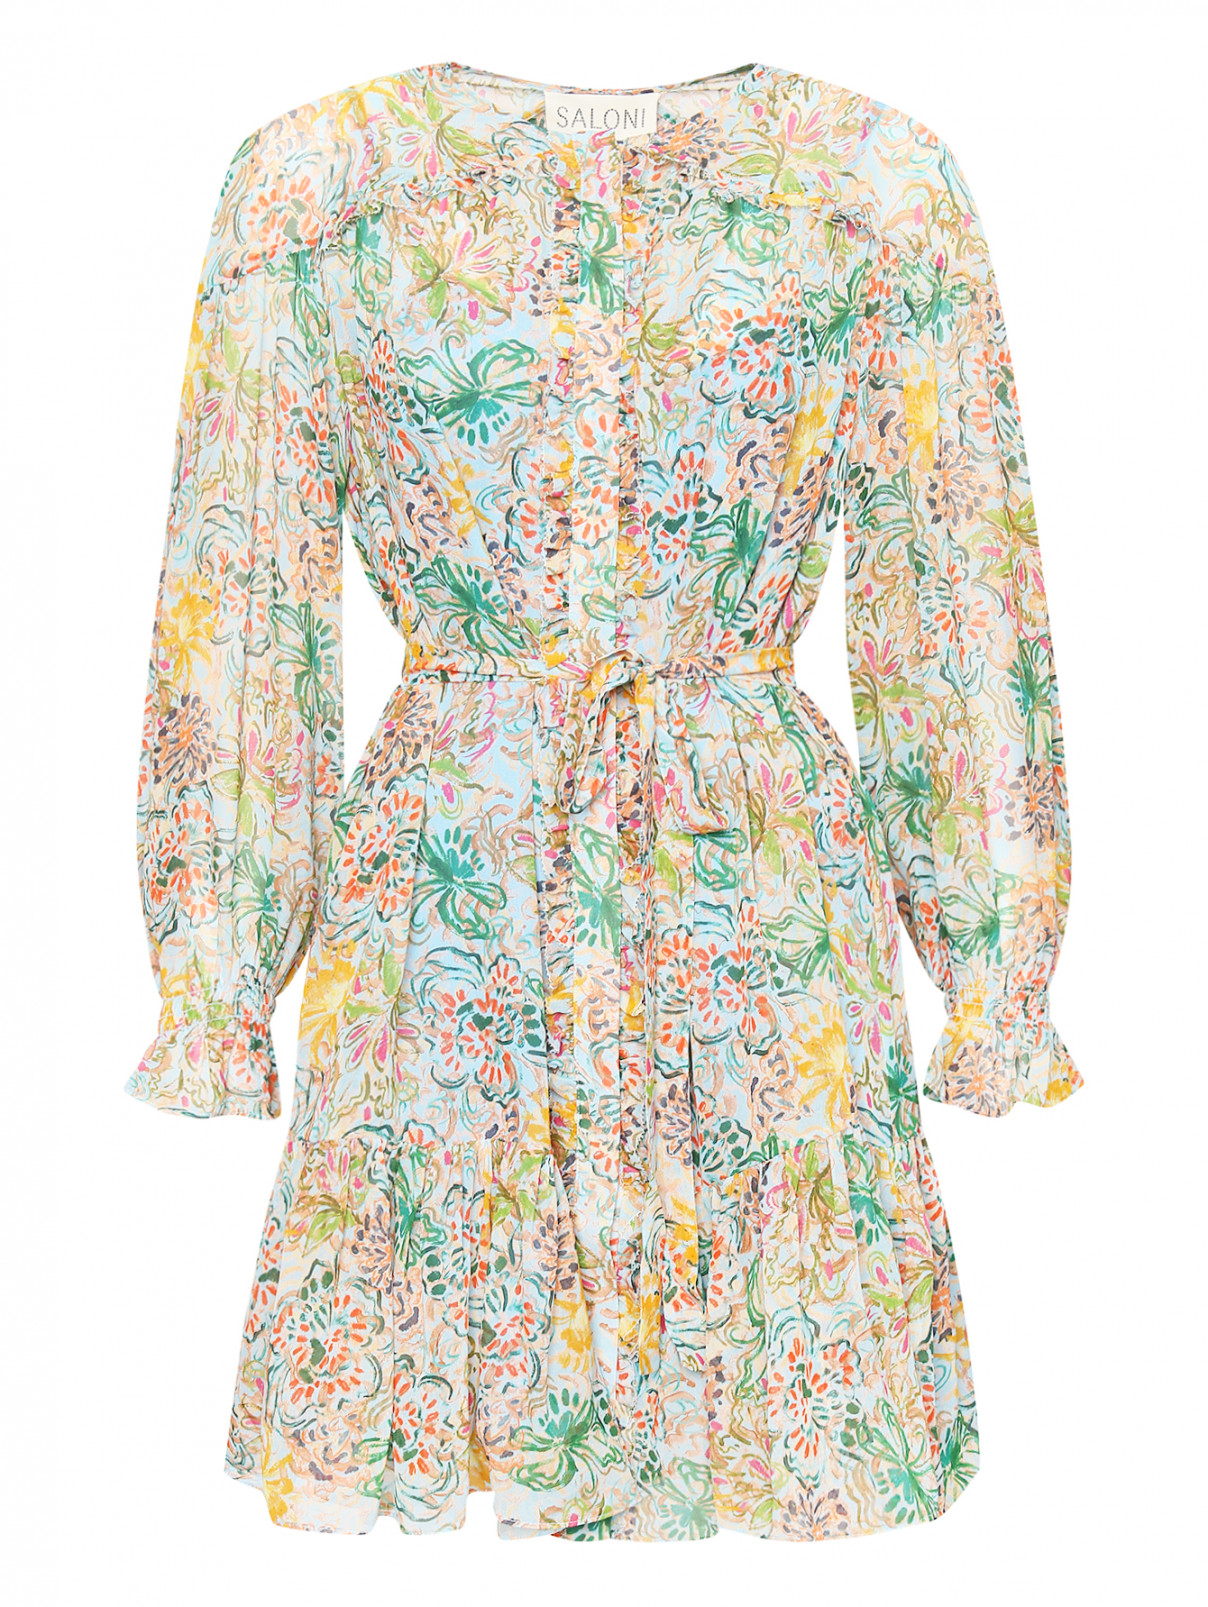 Платье из шелка с оборками и рюшами Saloni  –  Общий вид  – Цвет:  Мультиколор